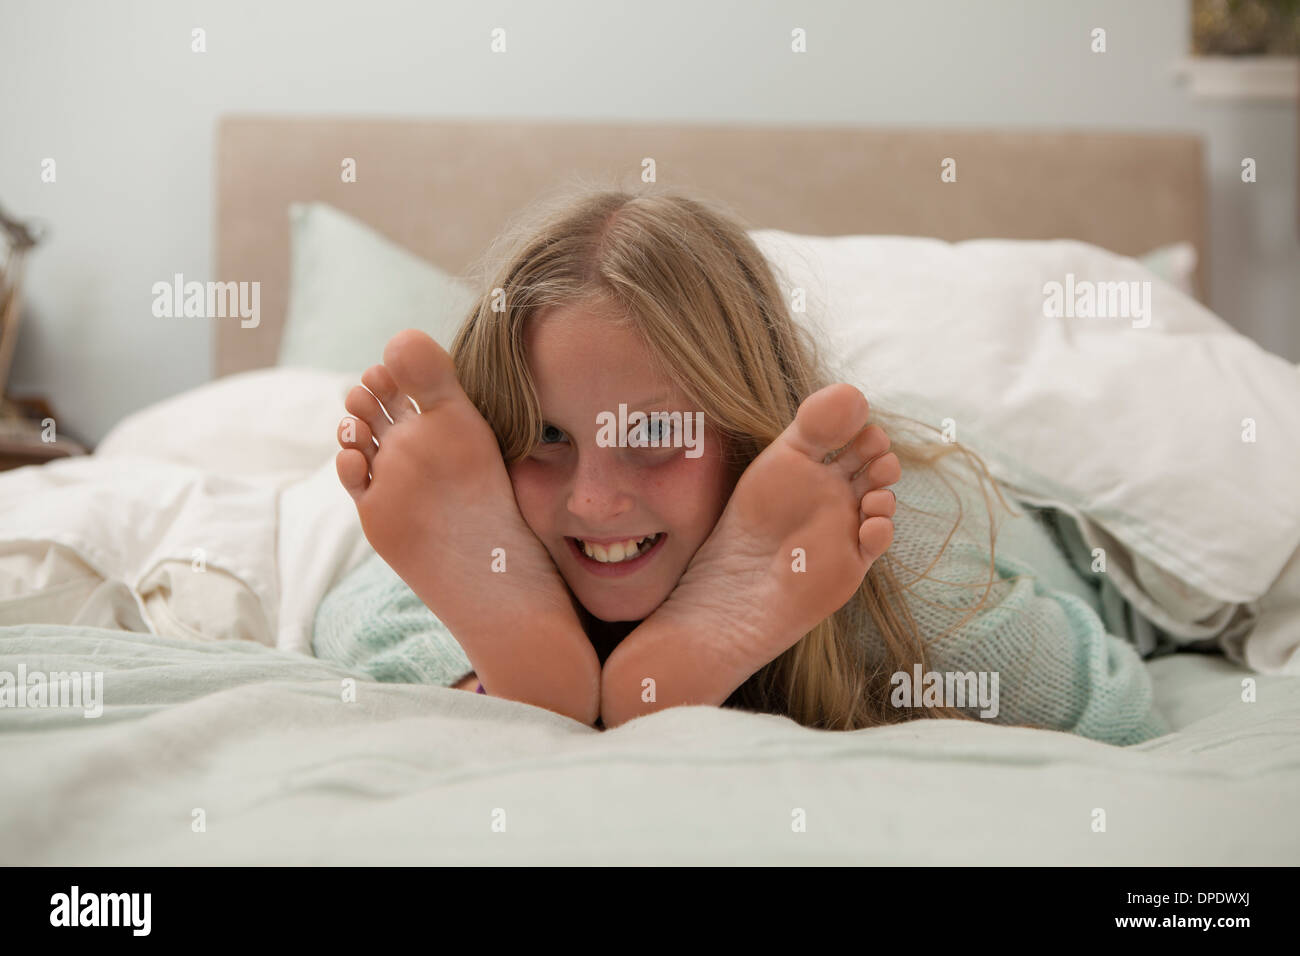 Porträt eines Mädchens auf Bett zwischen Füßen liegend Stockfoto